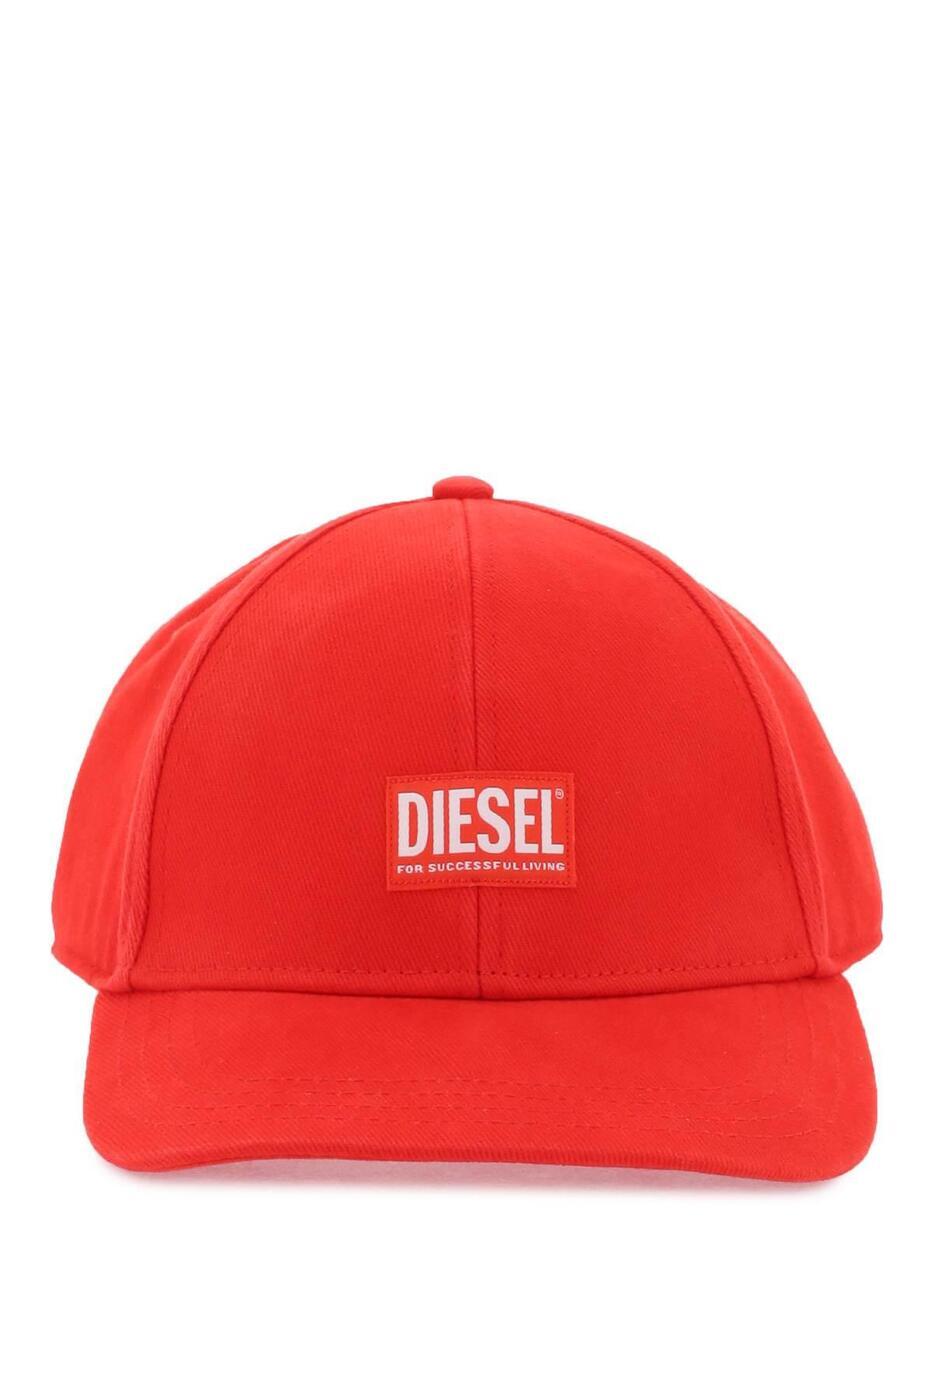 ディーゼル DIESEL ディーゼル レッド Red 帽子 メンズ 8031096176789 【関税・送料無料】【ラッピング無料】 ba